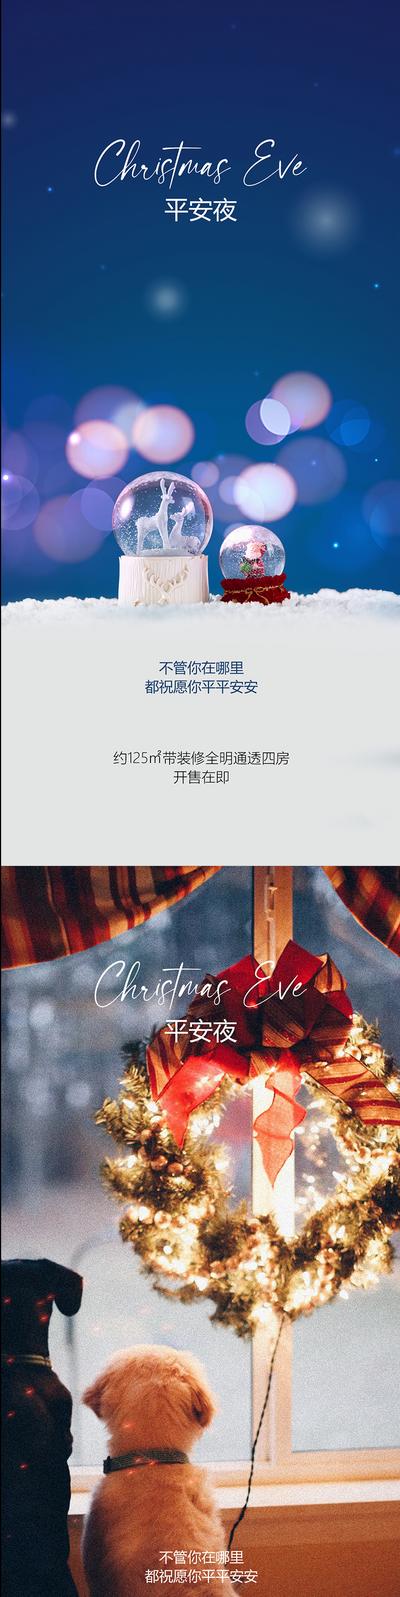 【南门网】海报 公历节日 圣诞节 平安夜 水晶球 光晕 